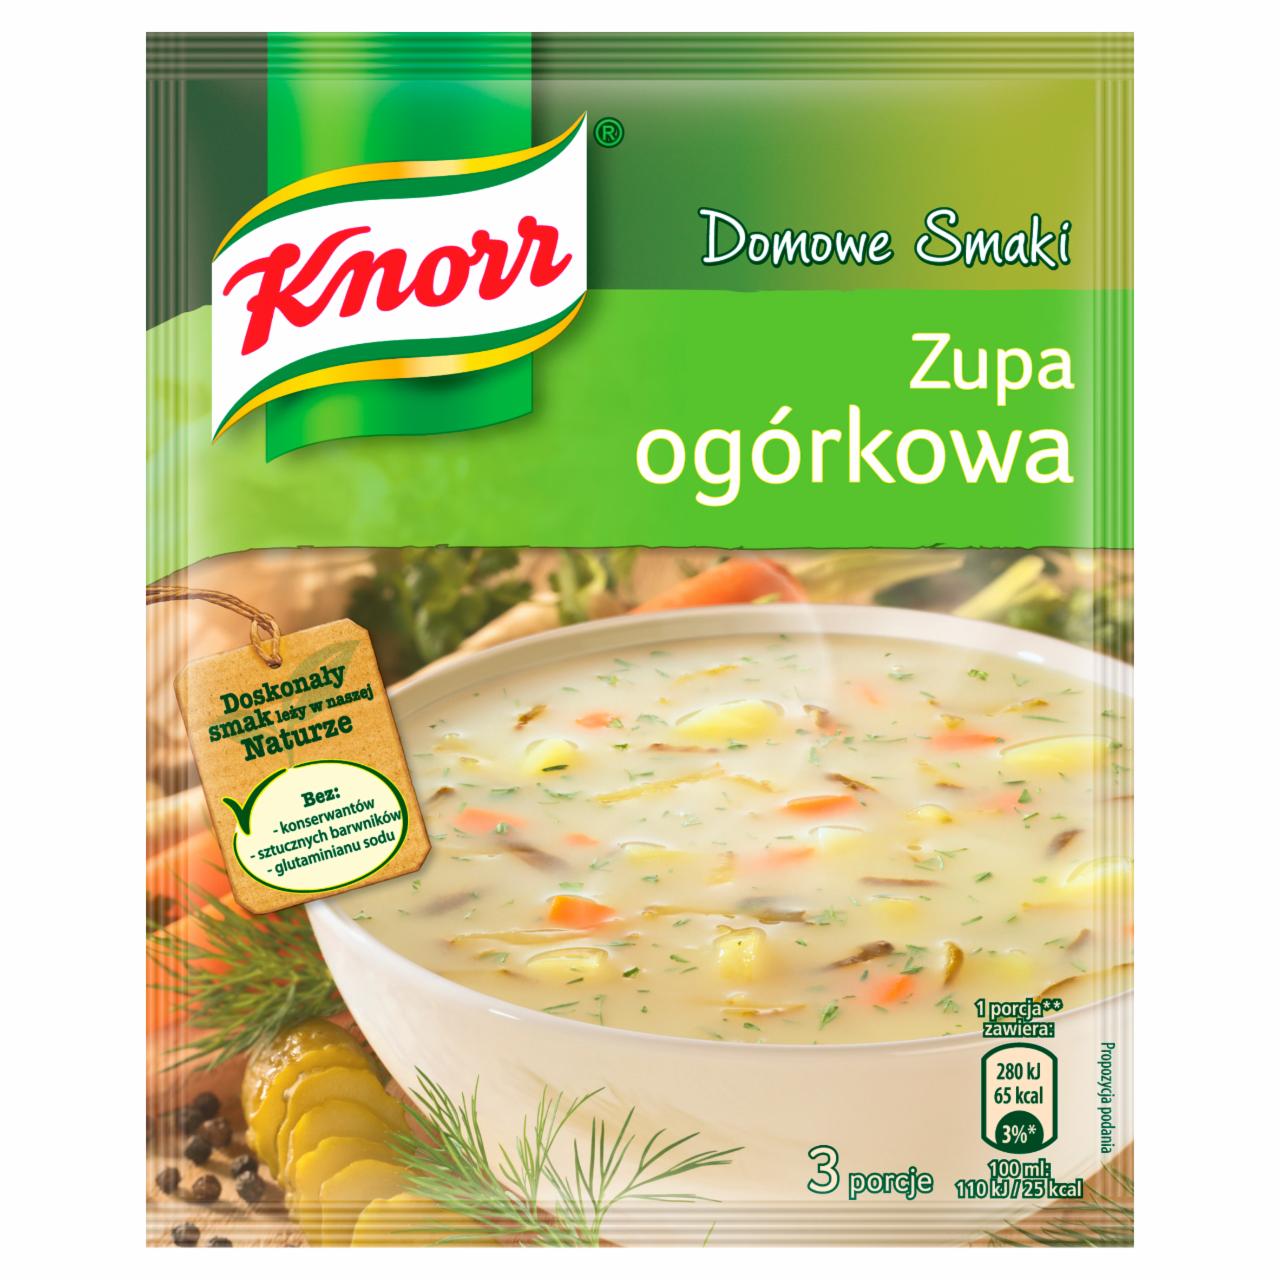 Zdjęcia - Knorr Domowe Smaki Zupa ogórkowa 50 g